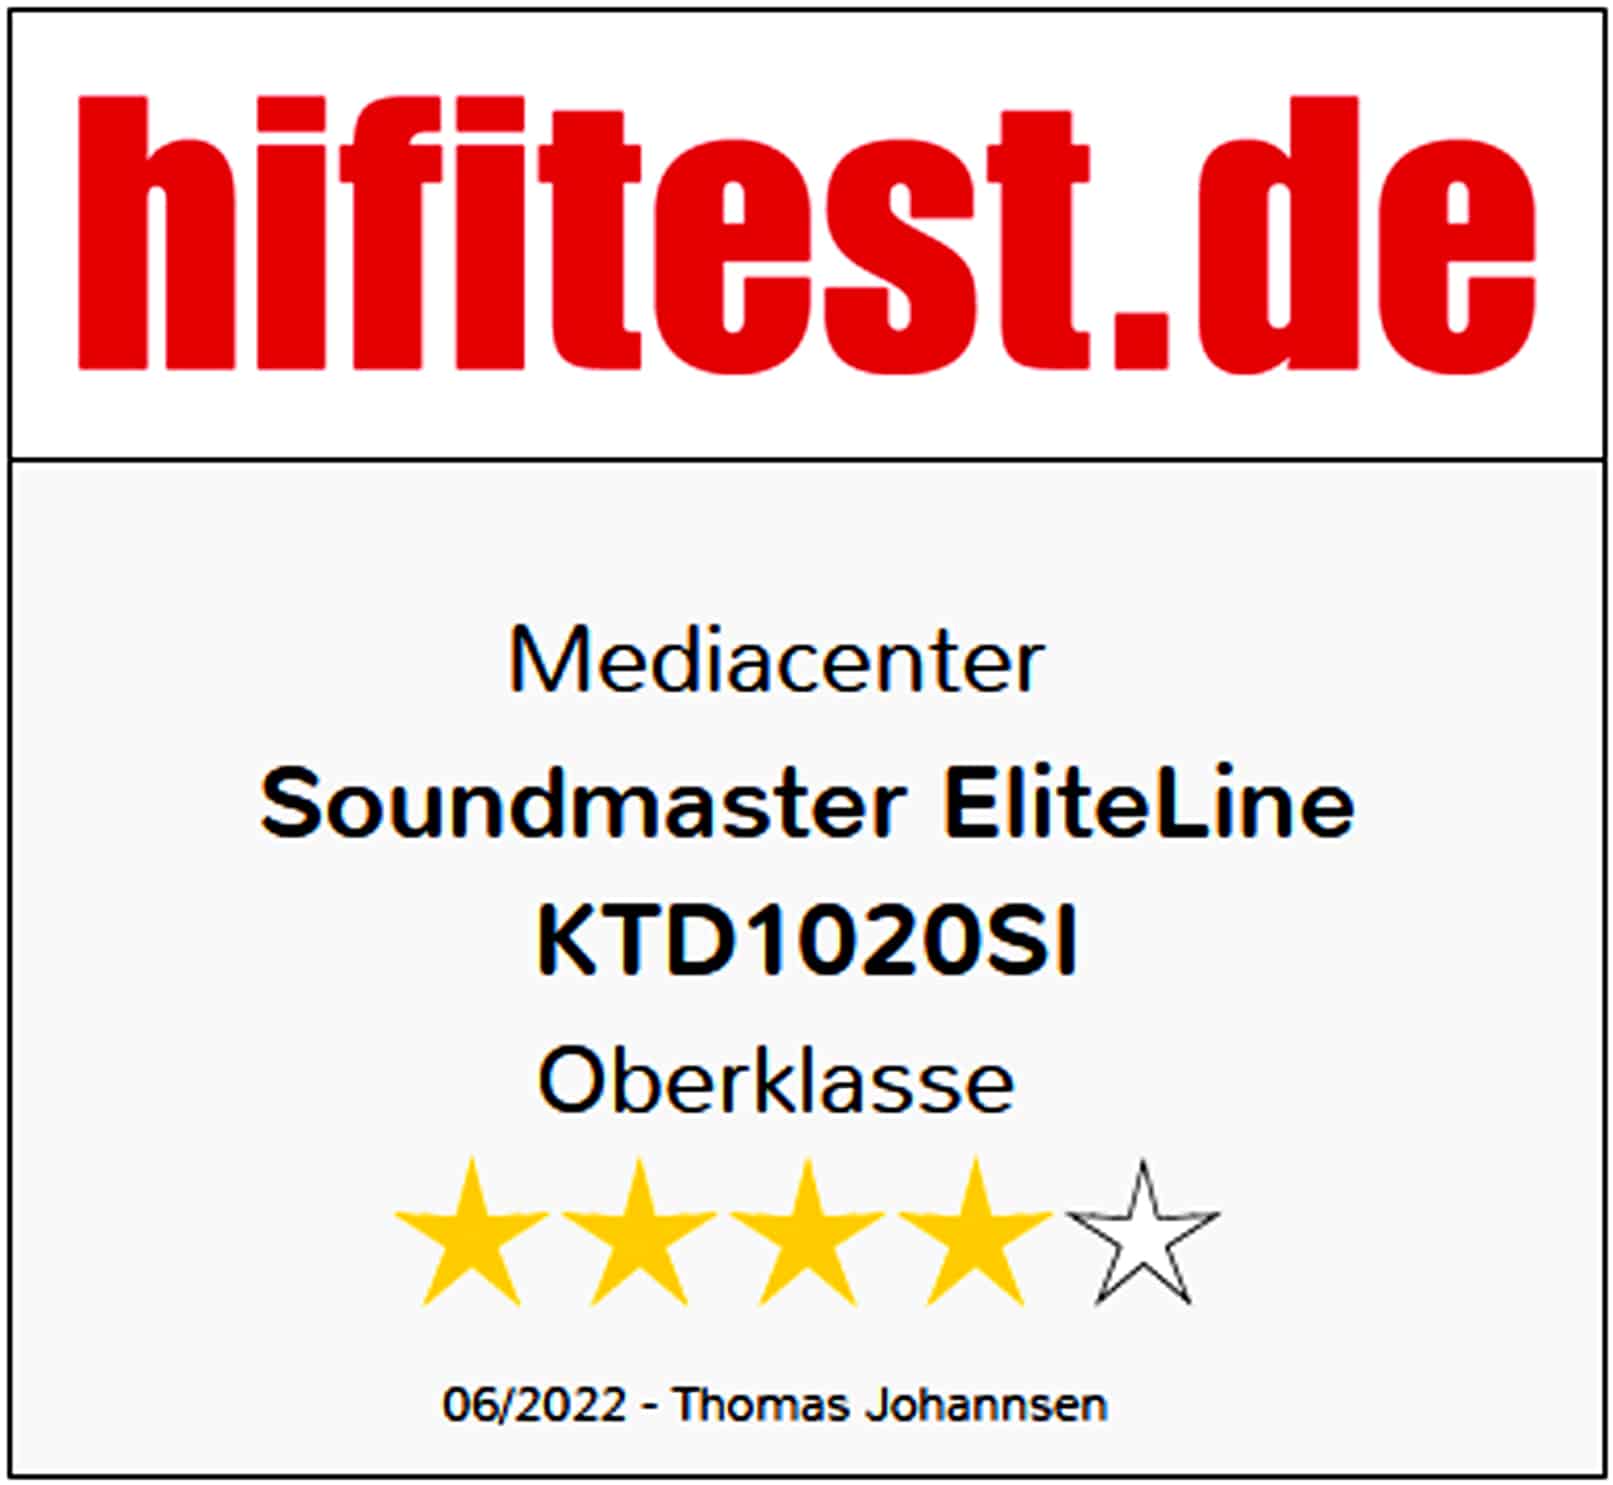 SOUNDMASTER ELITE LINE Küchen Multimedia-Center KTD1020SI, zum Unterbau